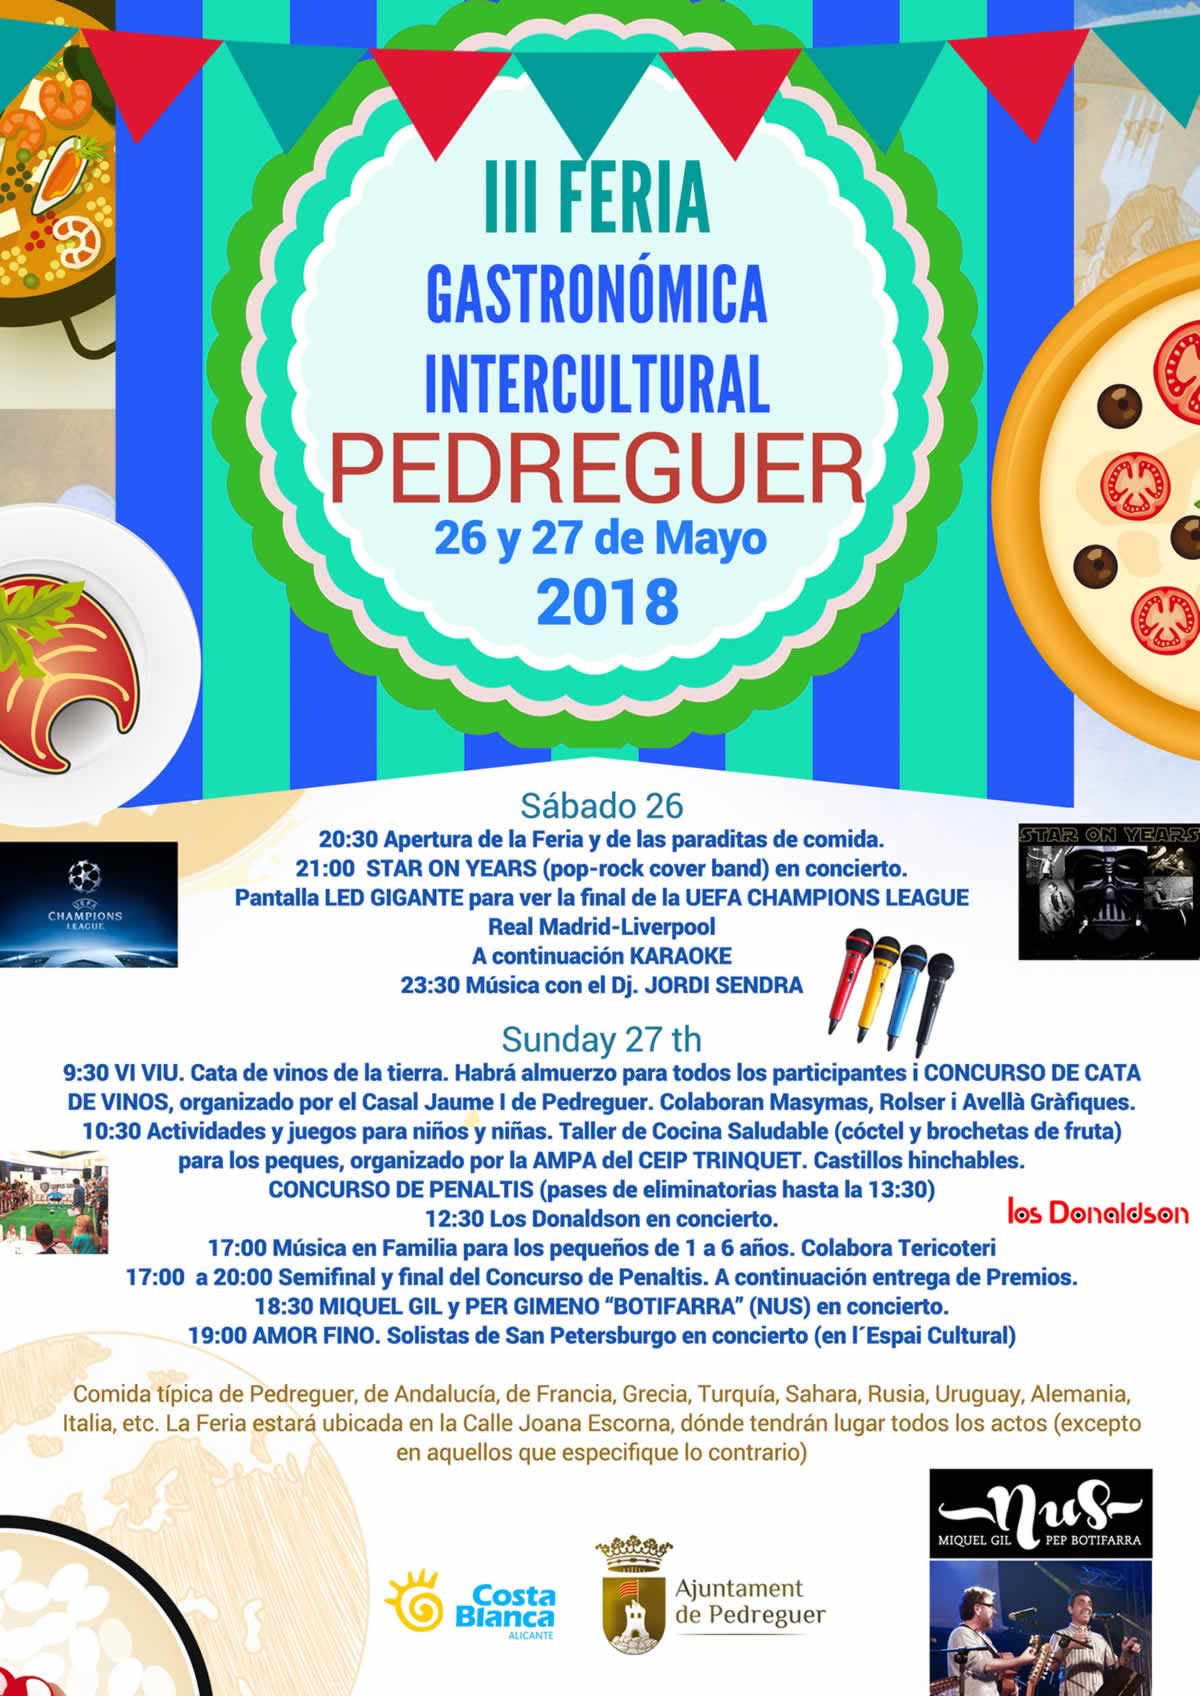  III FERIA GASTRONOMICA INTERCULTURAL en Pedreguer , Alicante , los dias 26 y 27 de Mayo del 2018